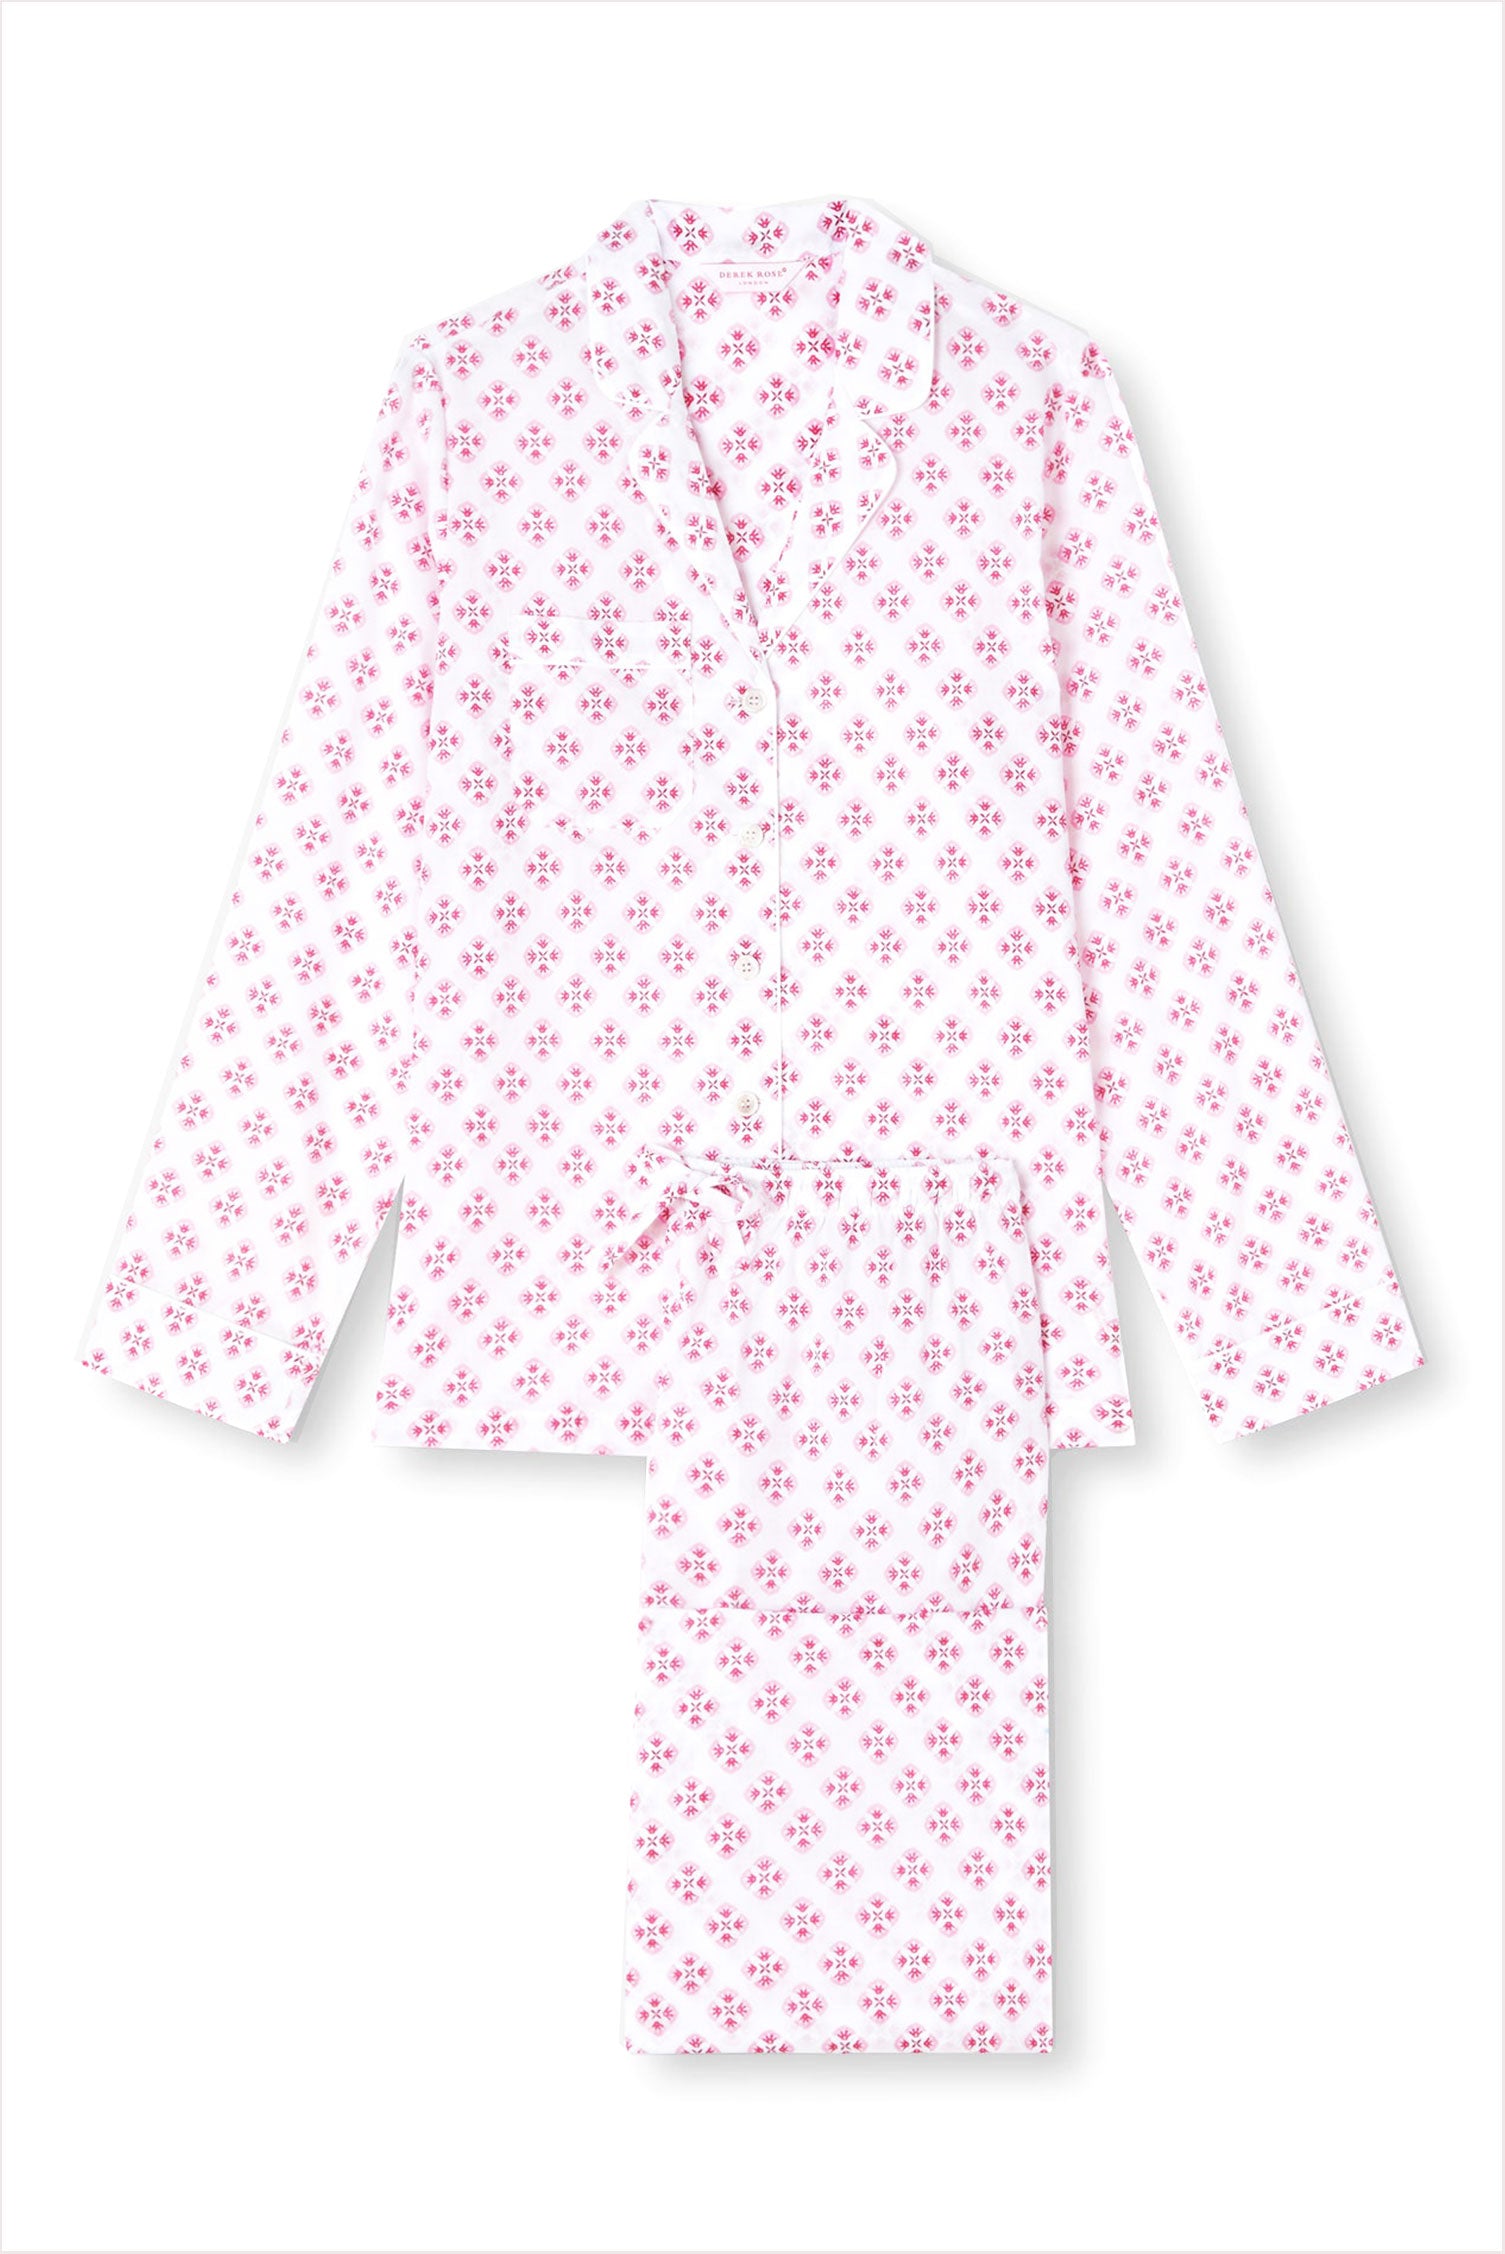 Louis Vuitton Pajamas Pink